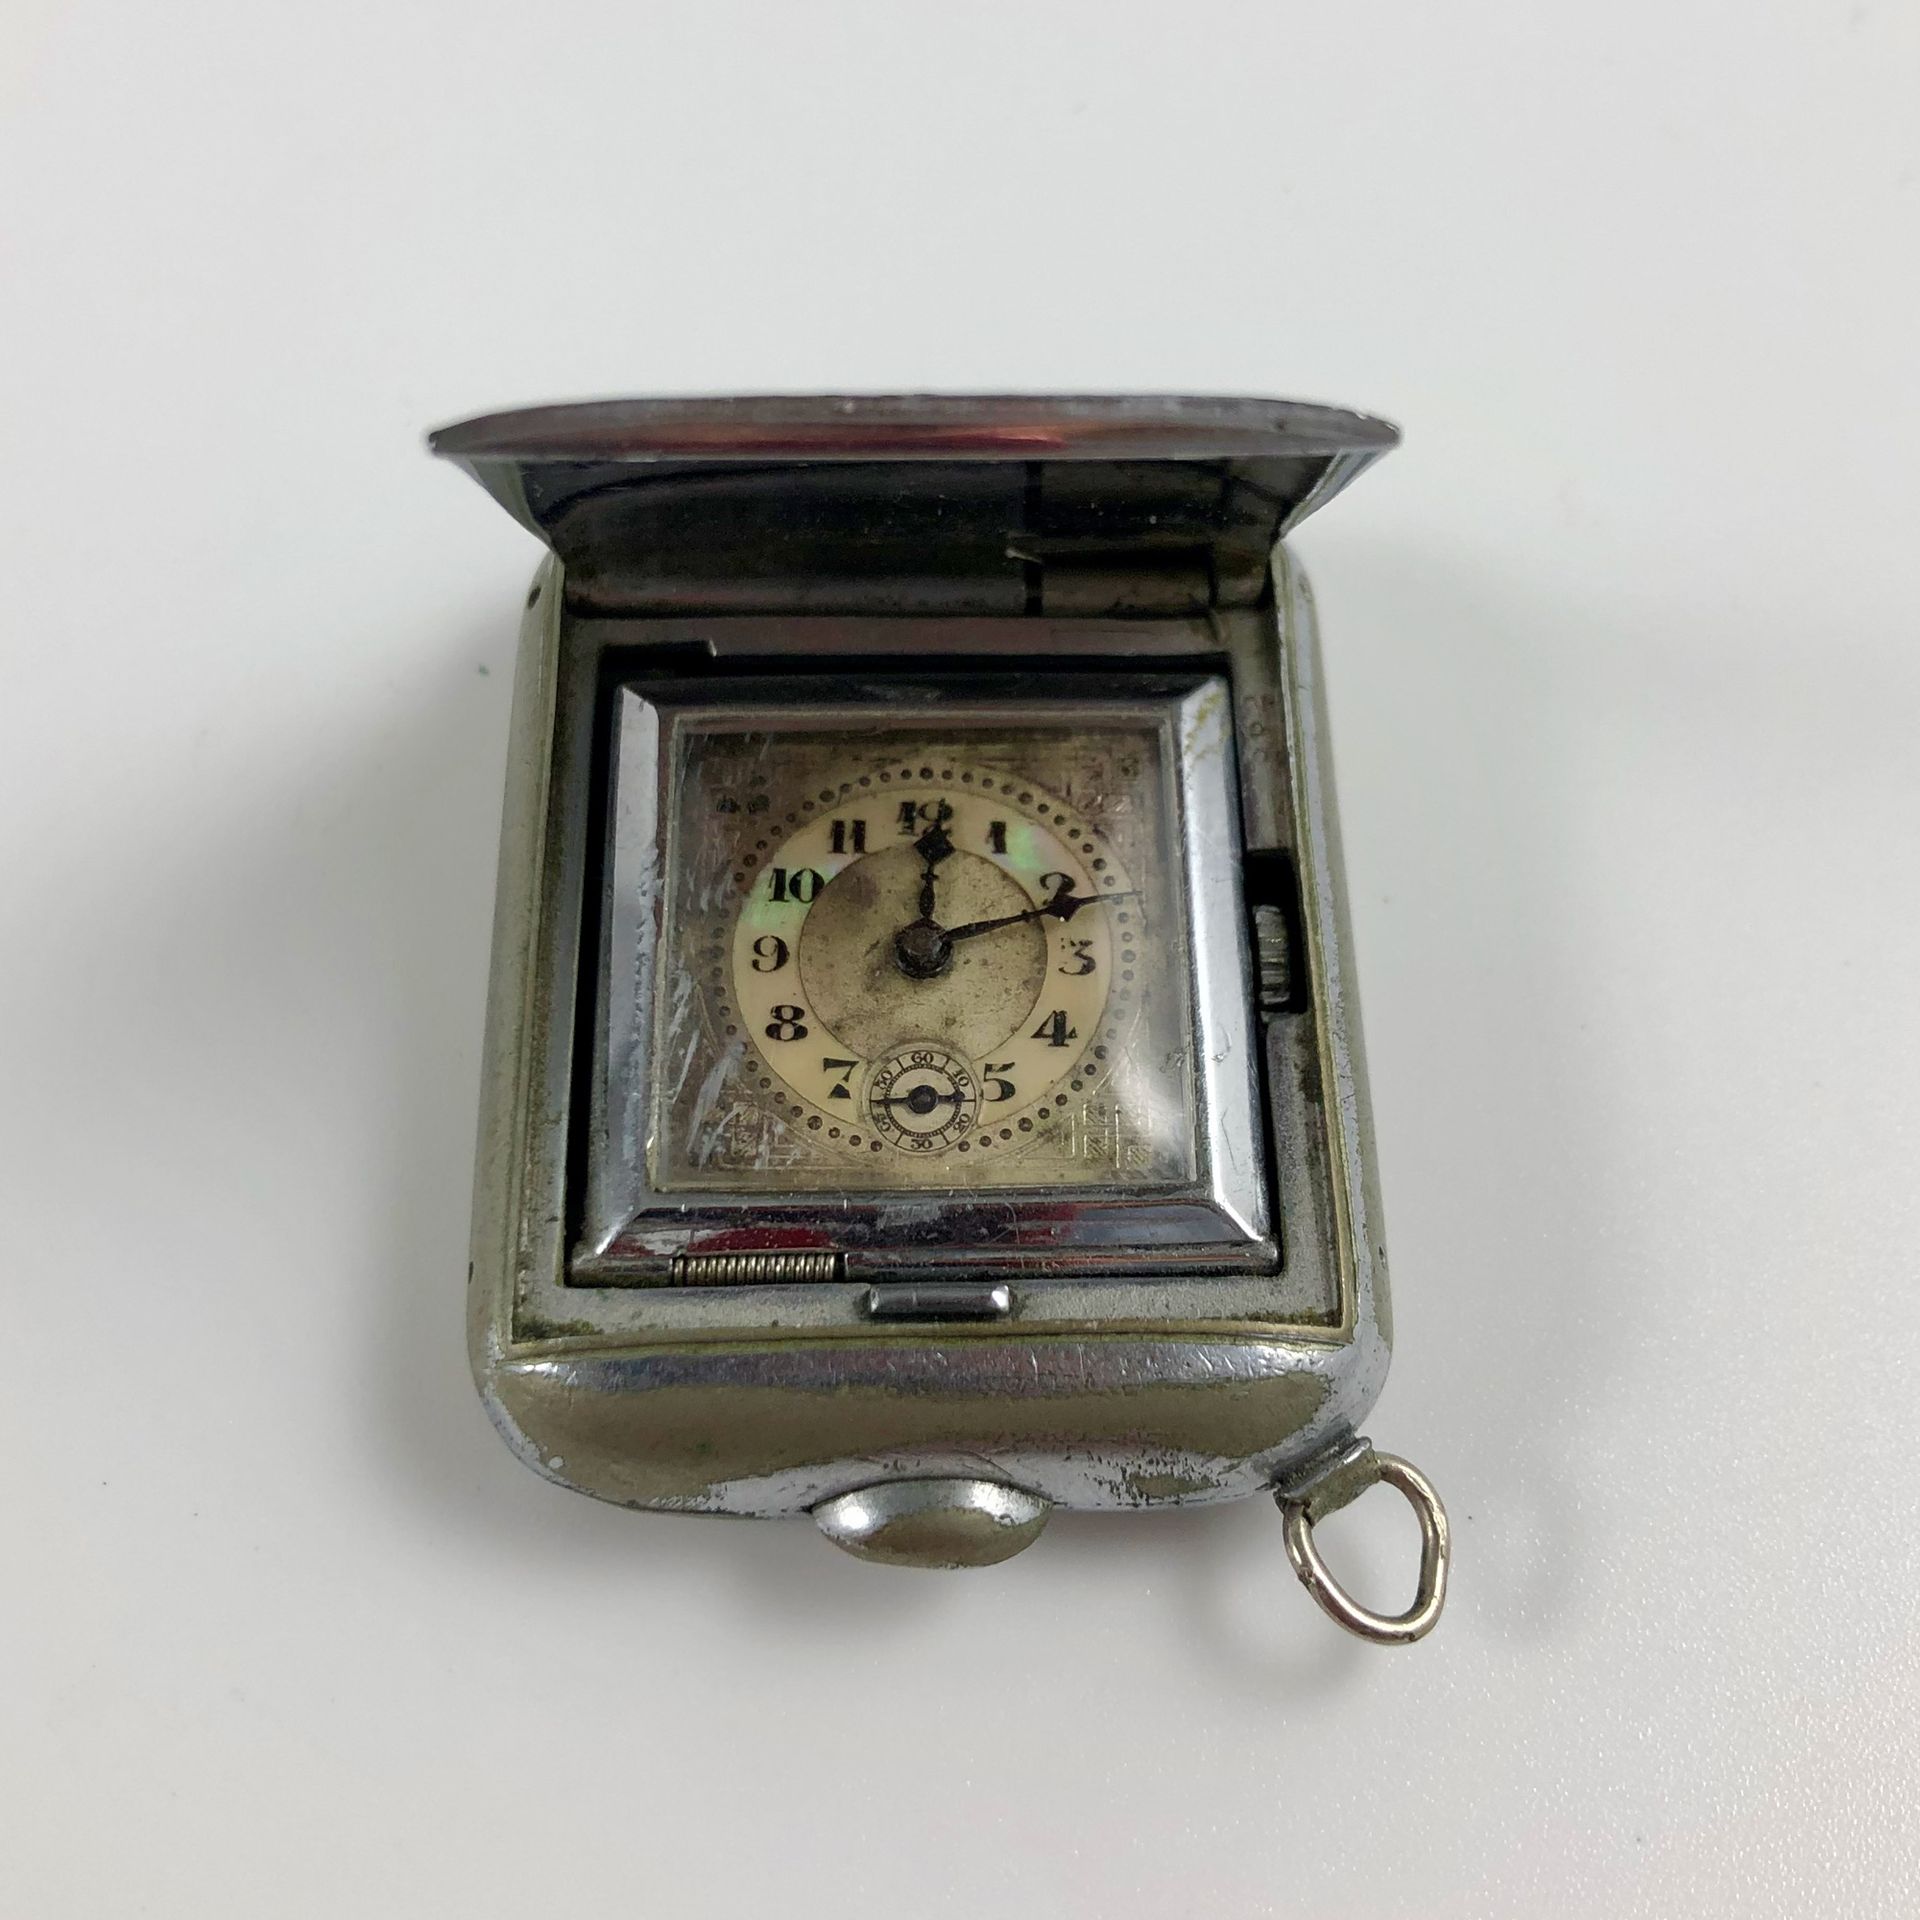 Null 
手袋手表。铬金属表壳的怀表，一个按钮可以将手表从原来的位置抬起来。表盘上有阿拉伯数字。6点钟方向的秒针计数器。职能部门。没有提供服务。尺寸：35 x&hellip;